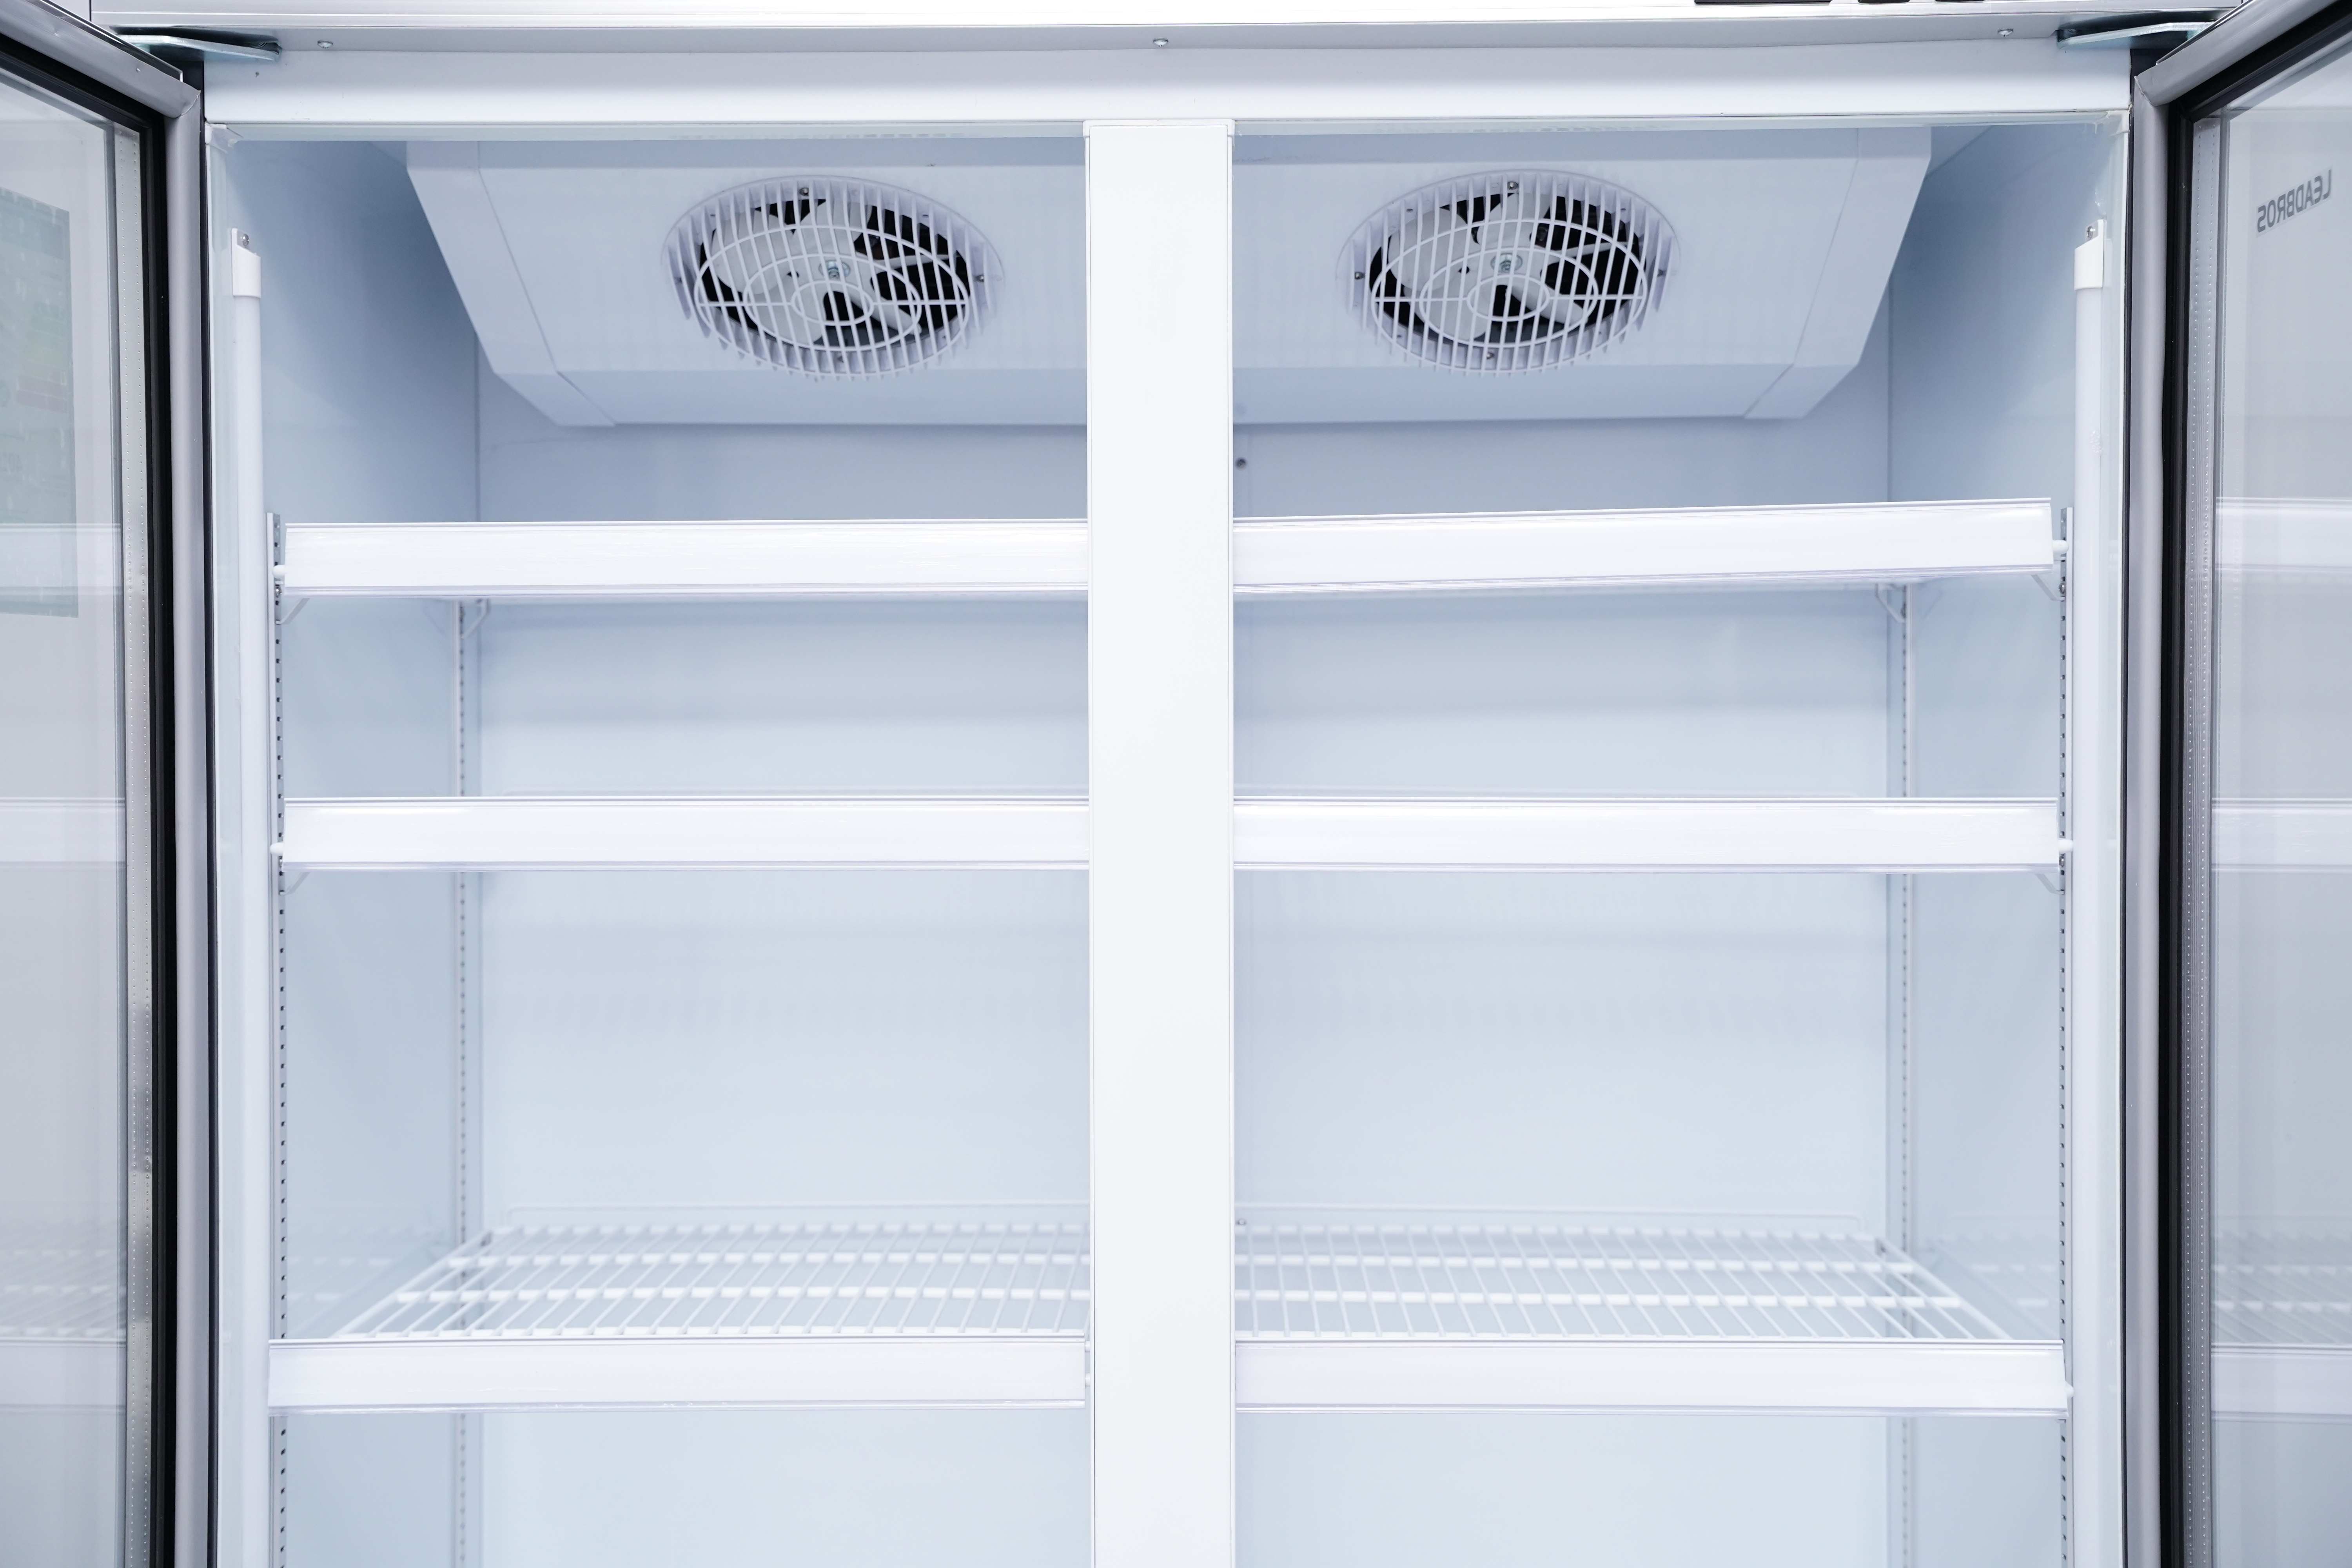 Морозильные витрины - Вертикальный холодильник XLS-1100